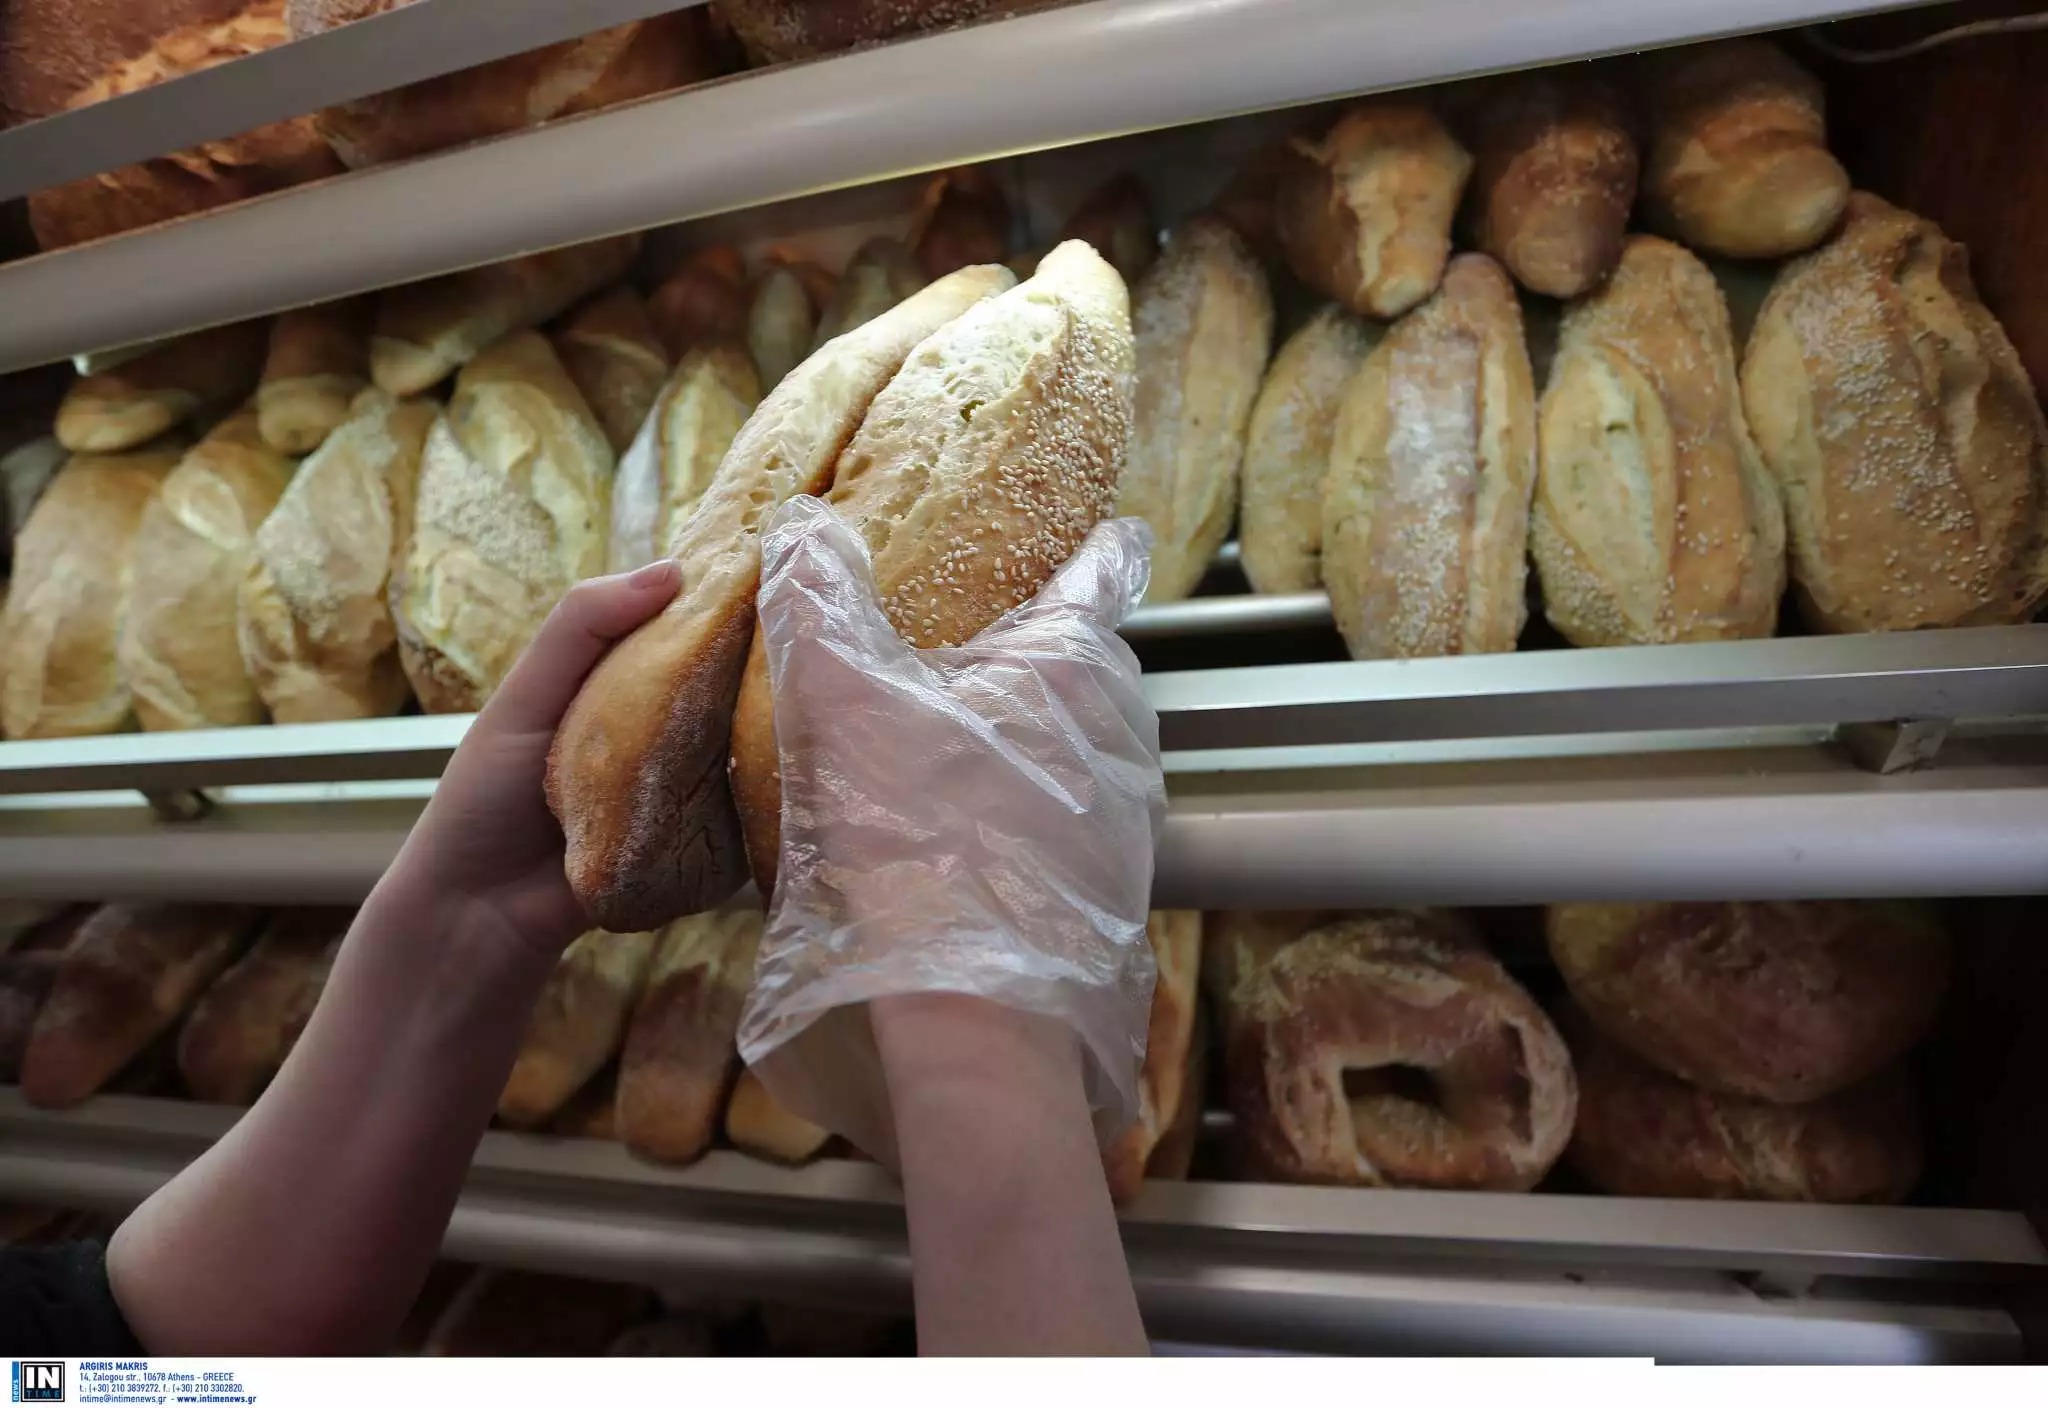 Σκρέκας σε αρτοποιούς: Να παραμείνουν σταθερές οι τιμές στο ψωμί